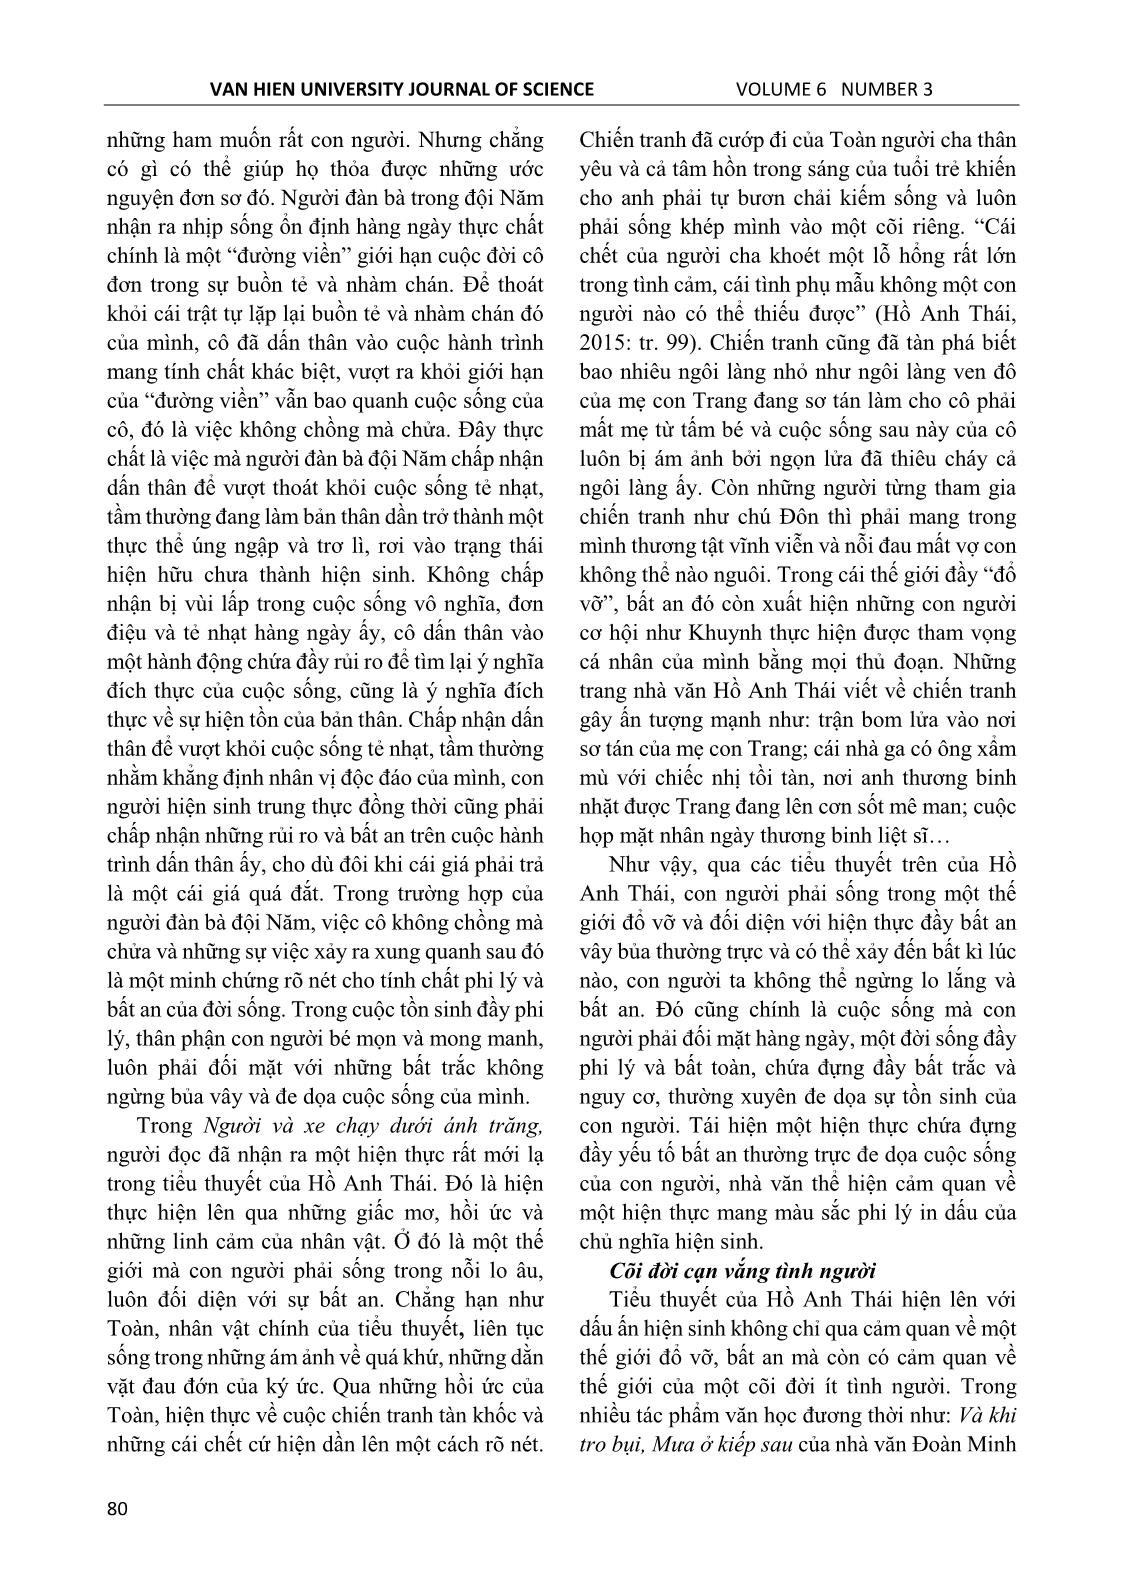 Dấu ấn hiện sinh trong tiểu thuyết Hồ Anh Thái nhìn từ cảm quan hiện thực trang 5